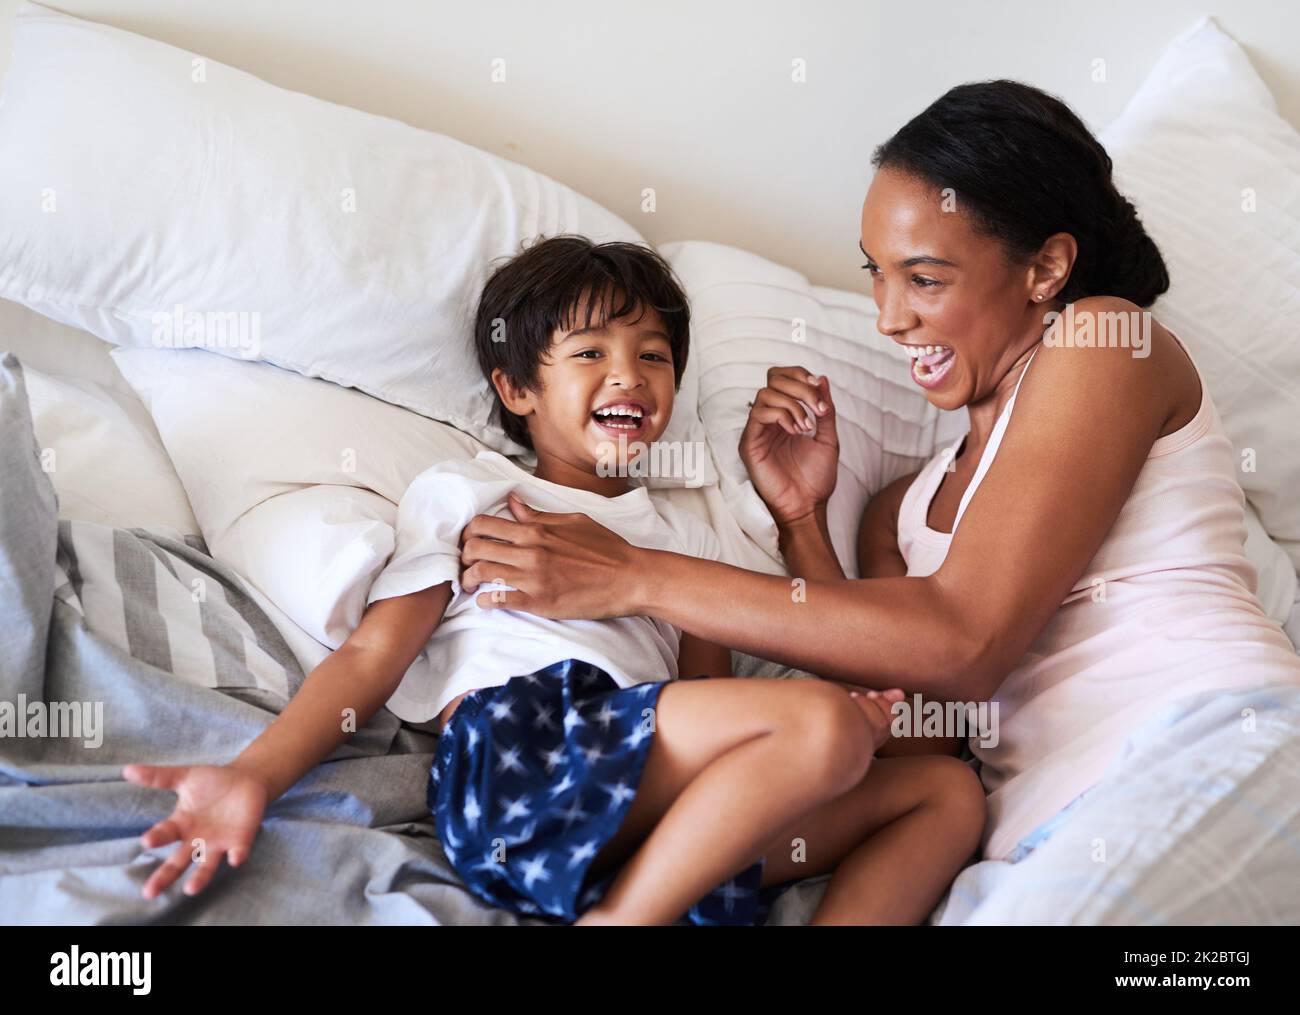 Meine kleine Bohne wächst so schnell auf. Aufnahme einer schönen jungen Mutter, die sich zu Hause im Bett mit ihrem Sohn entspannt. Stockfoto